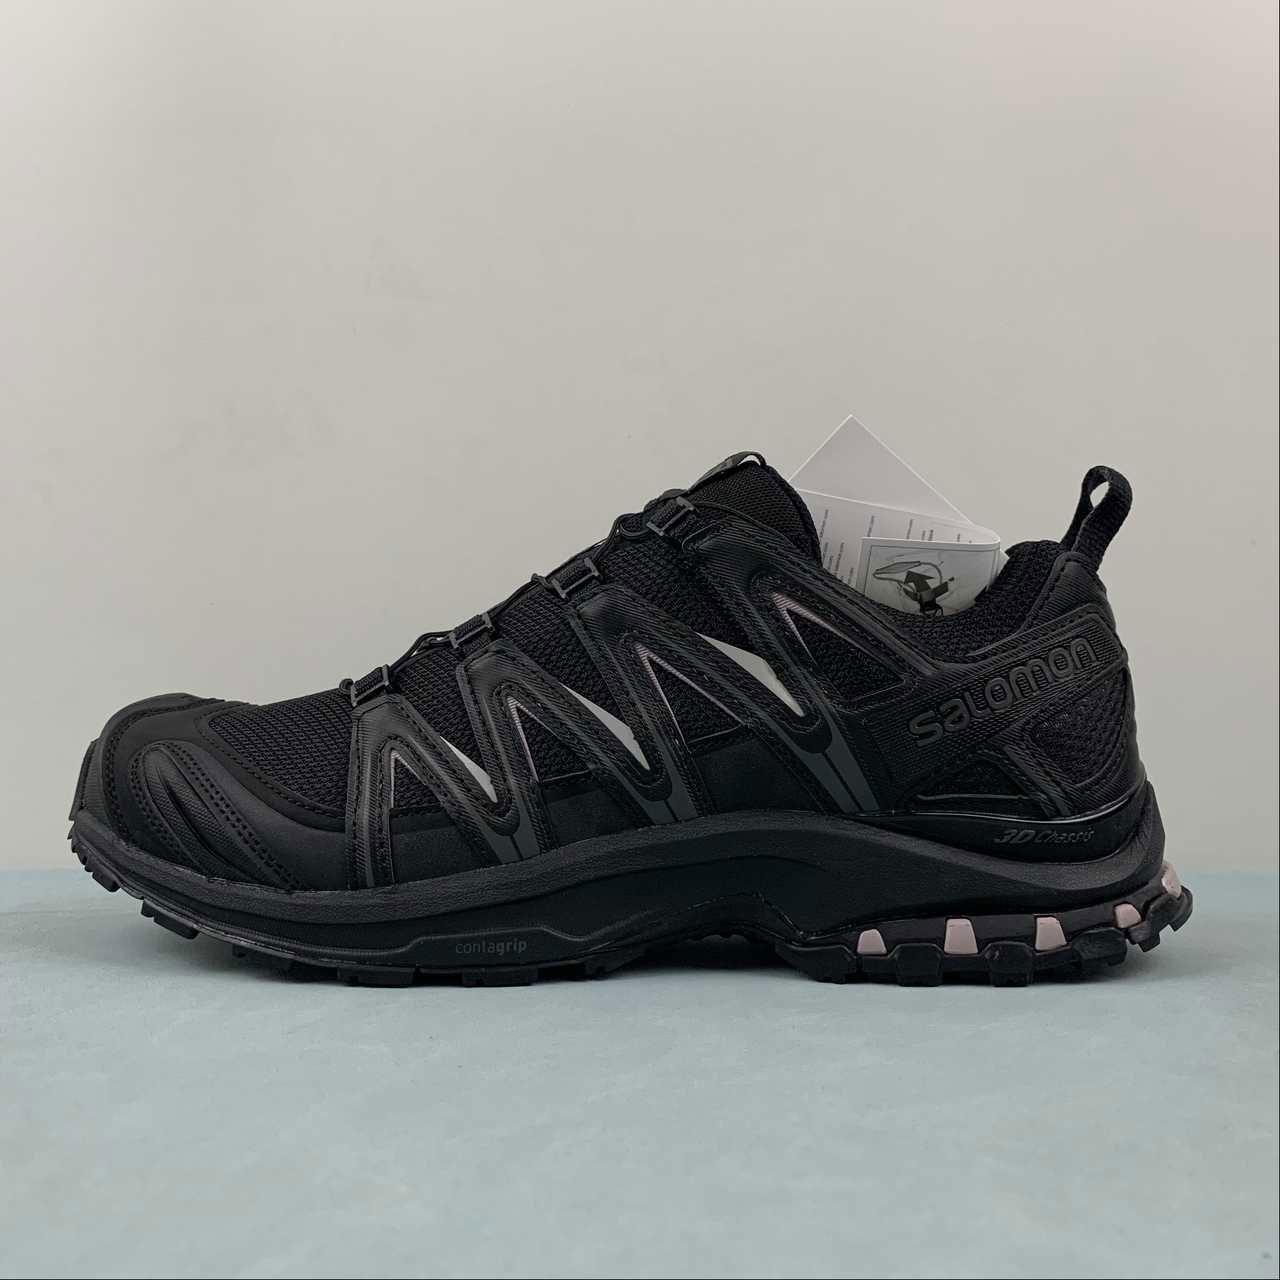 Salomon XA PRO-3D Retro Functional Fashion casual running shoes 412551 4